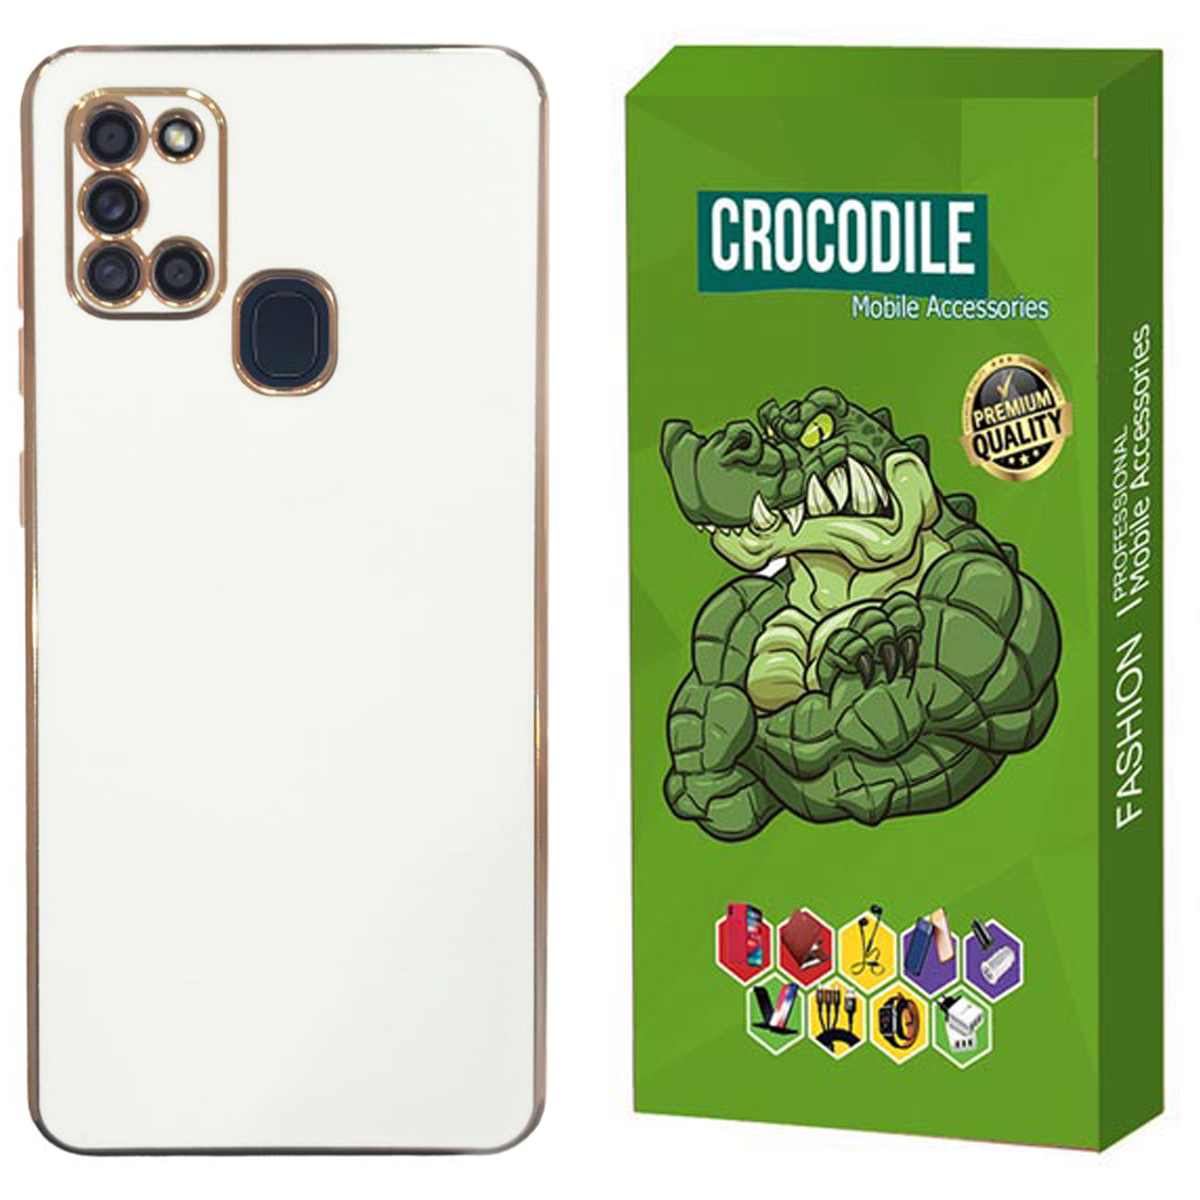 کاور کروکودیل مدل C-My case مناسب برای گوشی موبایل سامسونگ  Galaxy A21s